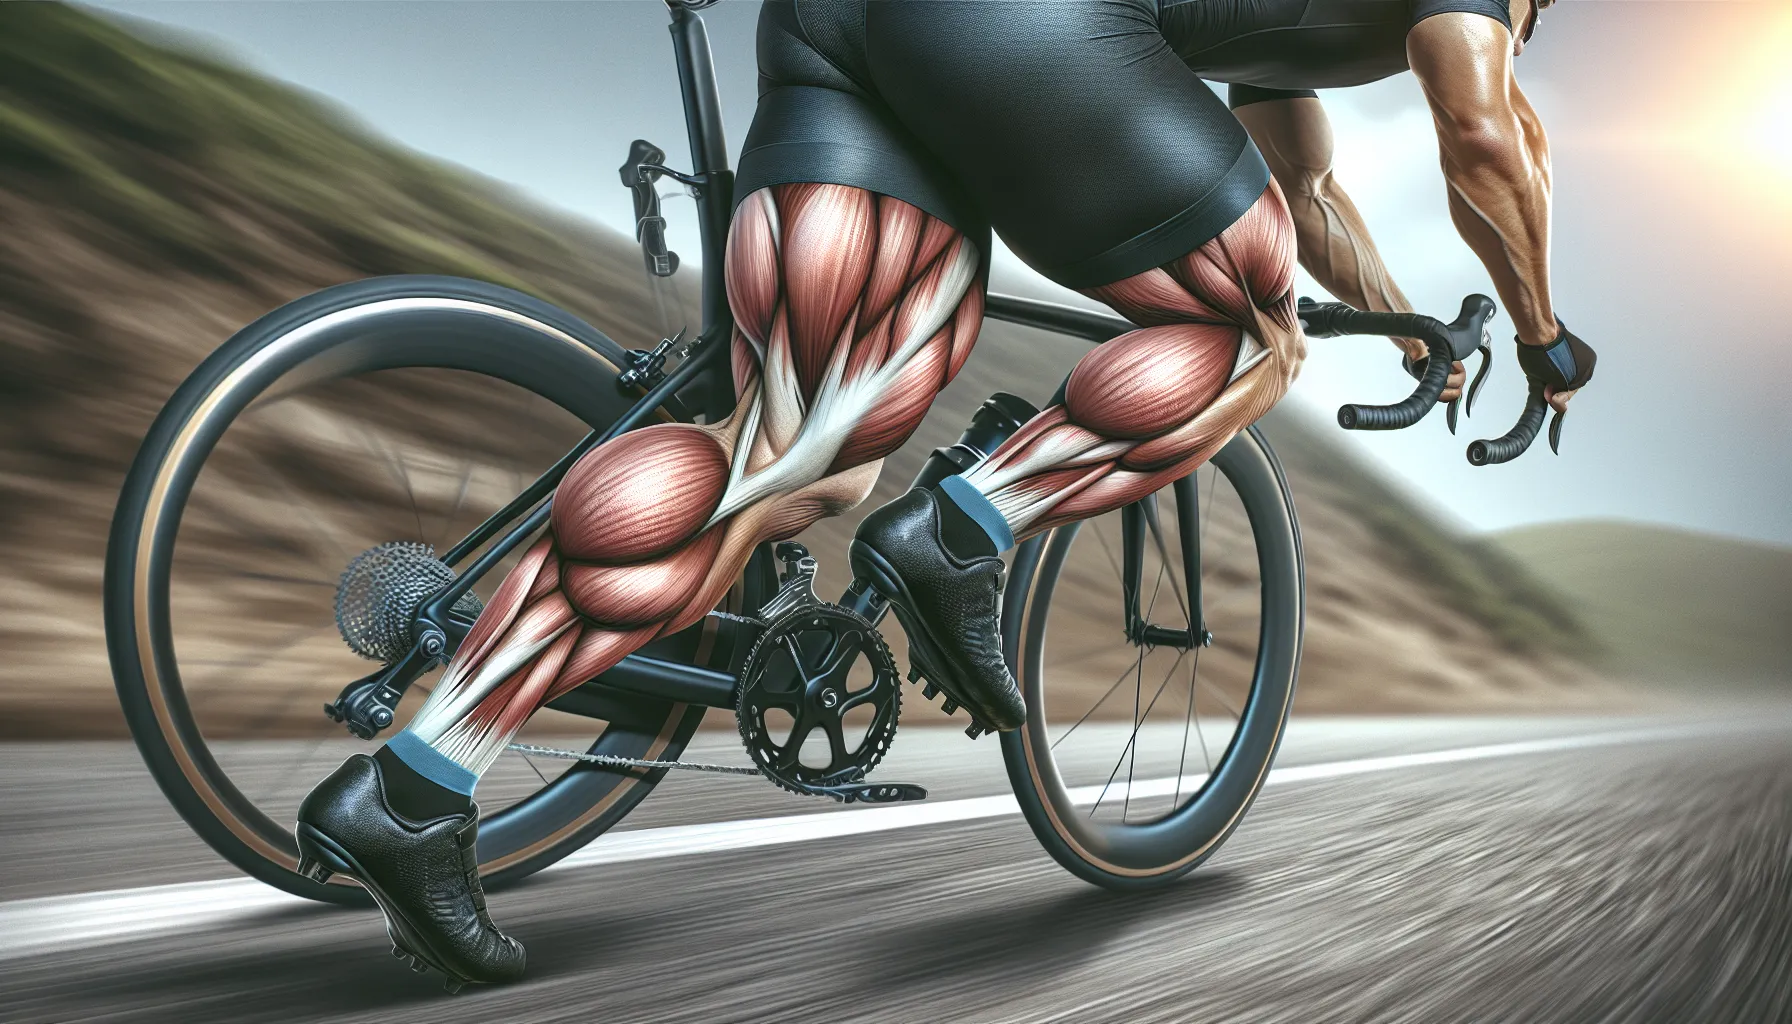 Aumentar a resistência muscular no ciclismo é fundamental para melhorar o desempenho e a capacidade de pedalar por longos períodos de tempo. Aqui estão algumas estratégias para alcançar esse objetivo:

1. Treinamento de força: Incorporar exercícios de musculação nas pernas, como agachamentos, avanços e levantamento terra, pode ajudar a fortalecer os músculos utilizados no